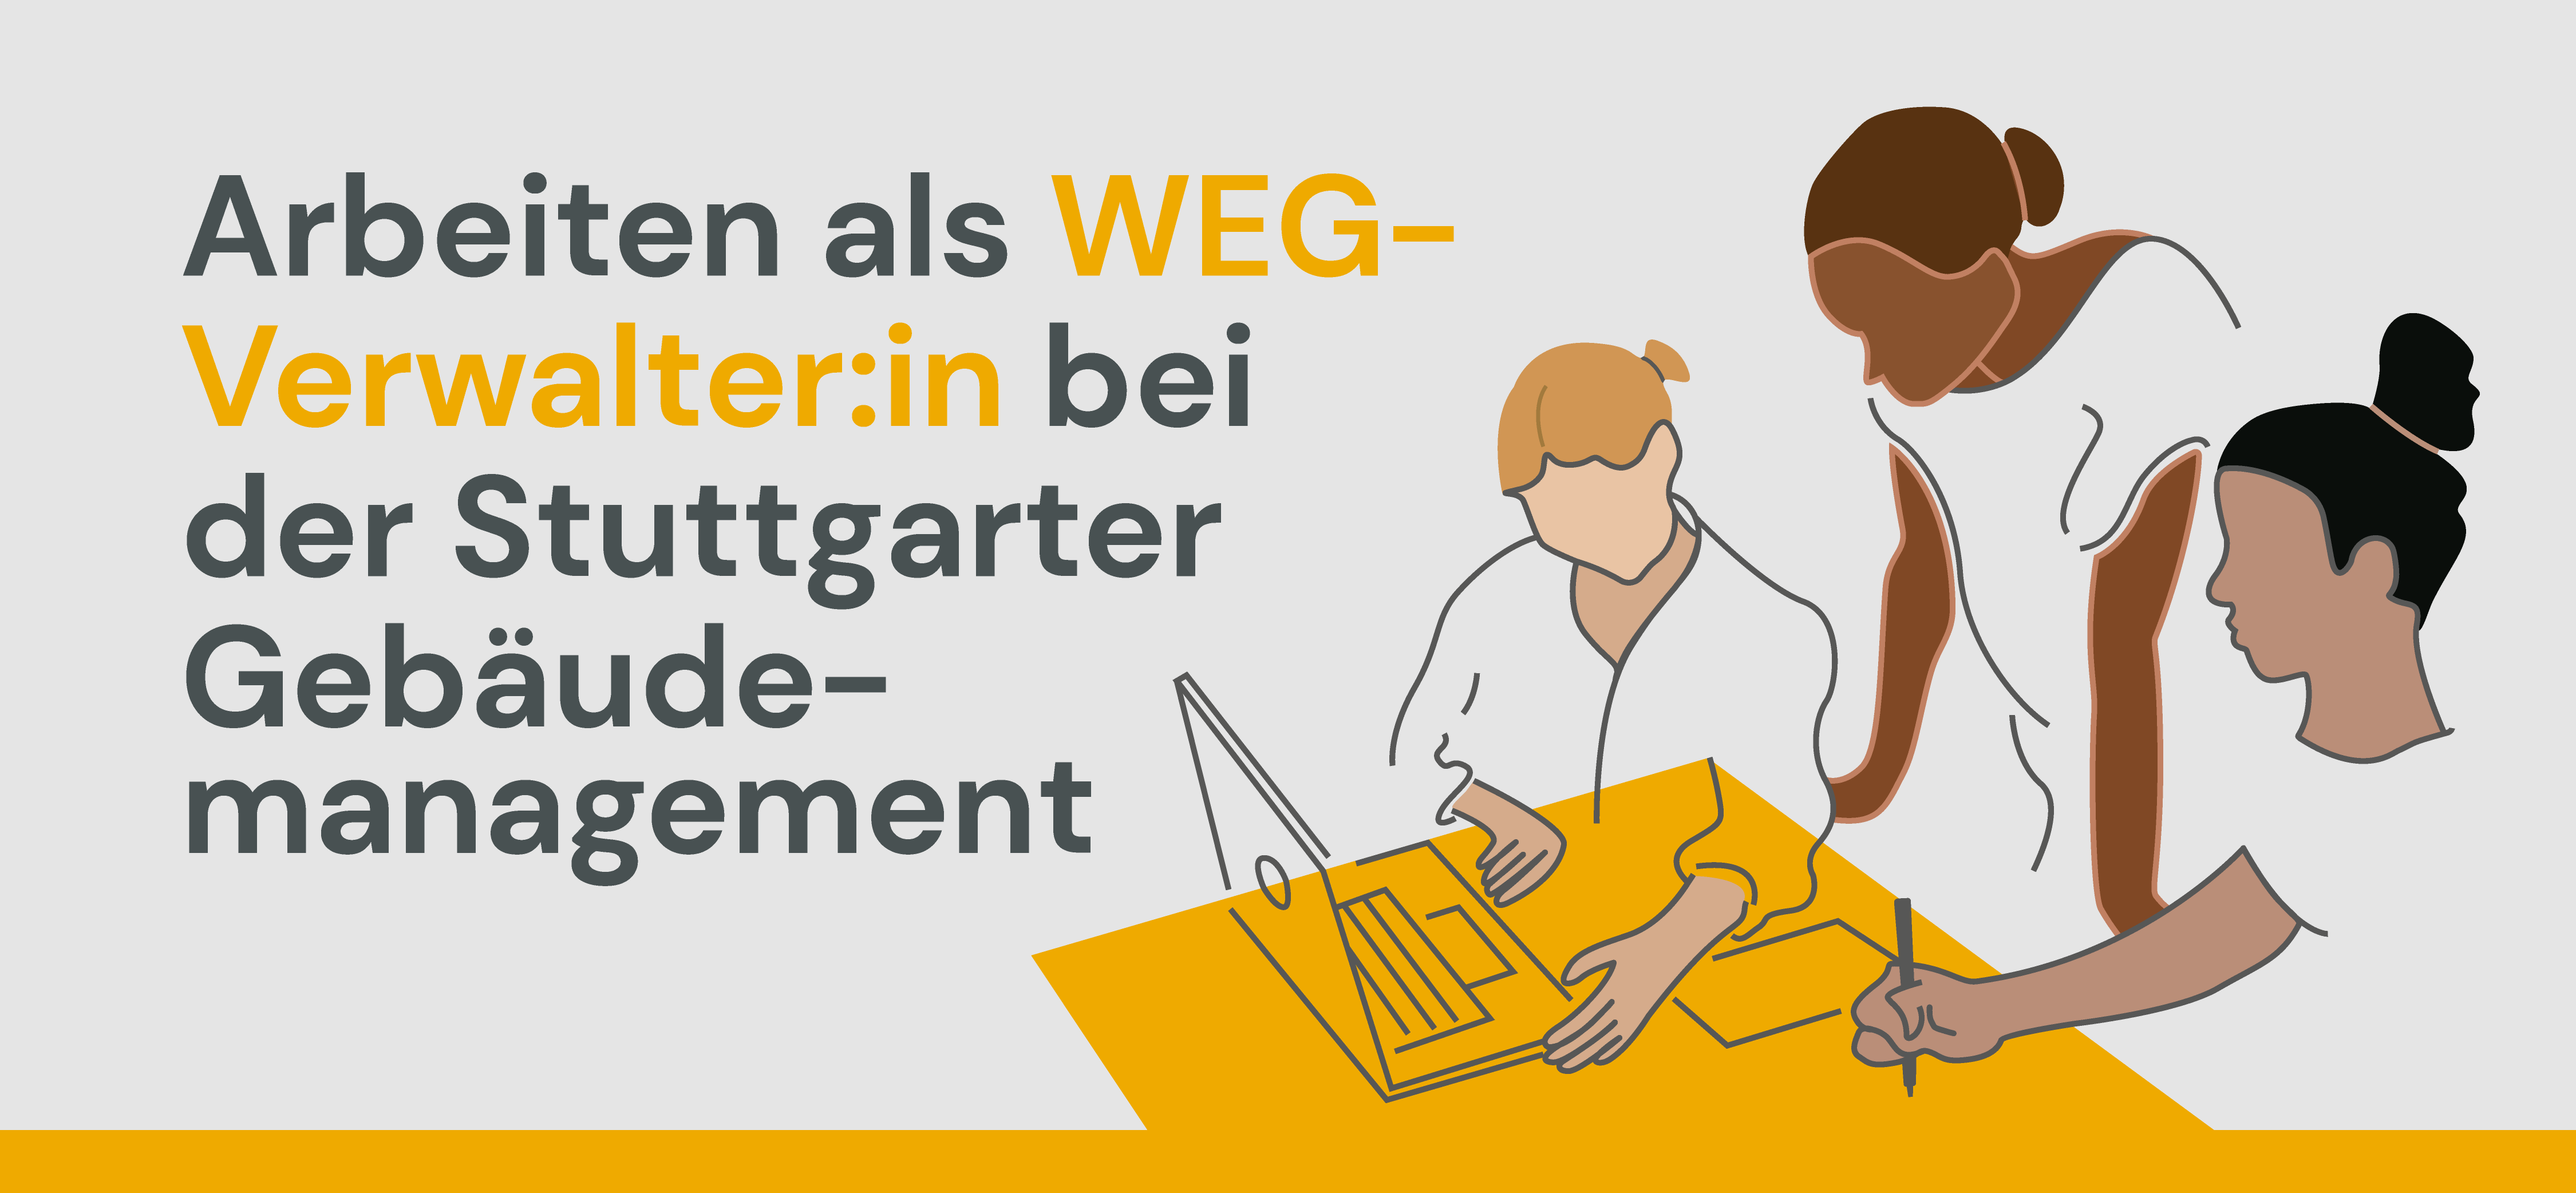 Arbeiten als WEG Verwalter*in bei der Stuttgarter Gebäudemanagement – Komm ins Team!